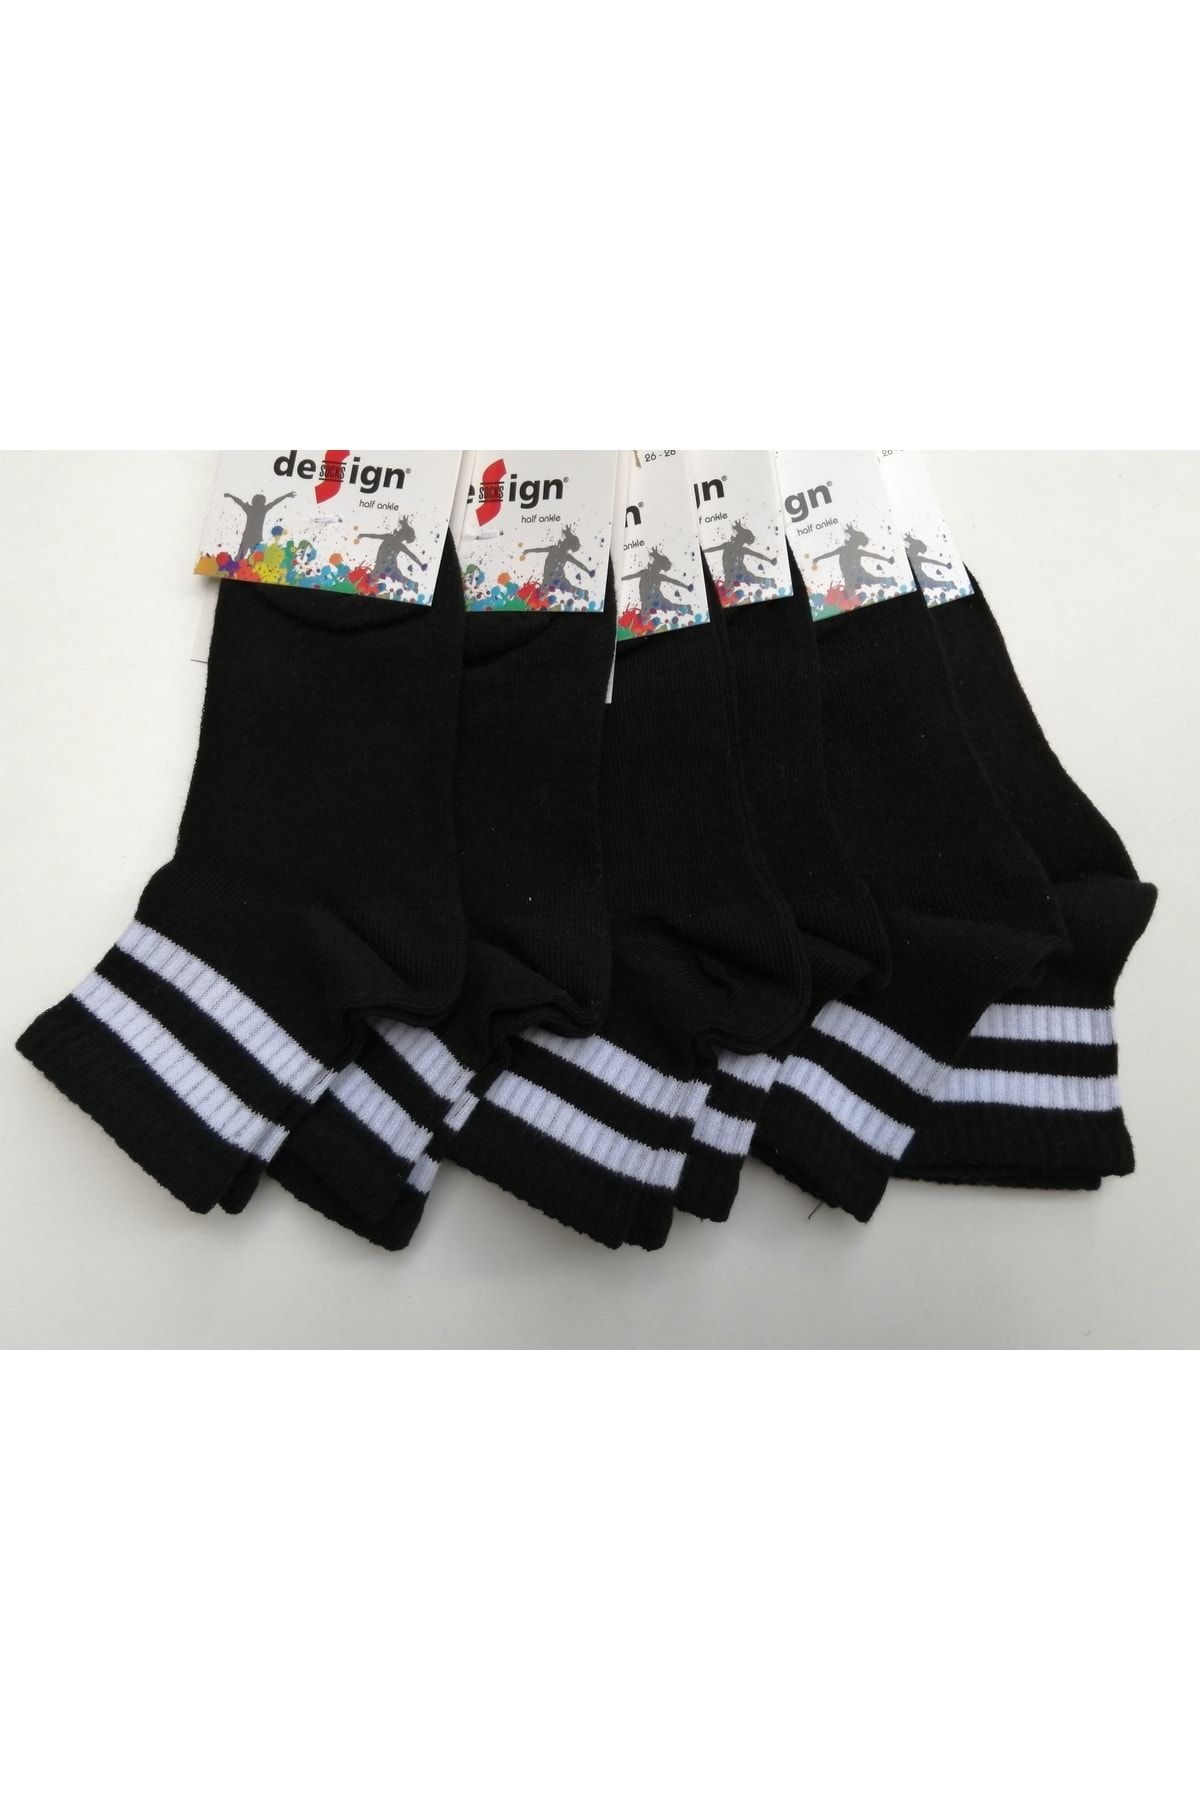 Design Socks 6'lı Desing Çizgili Patik Çocuk Çorabı